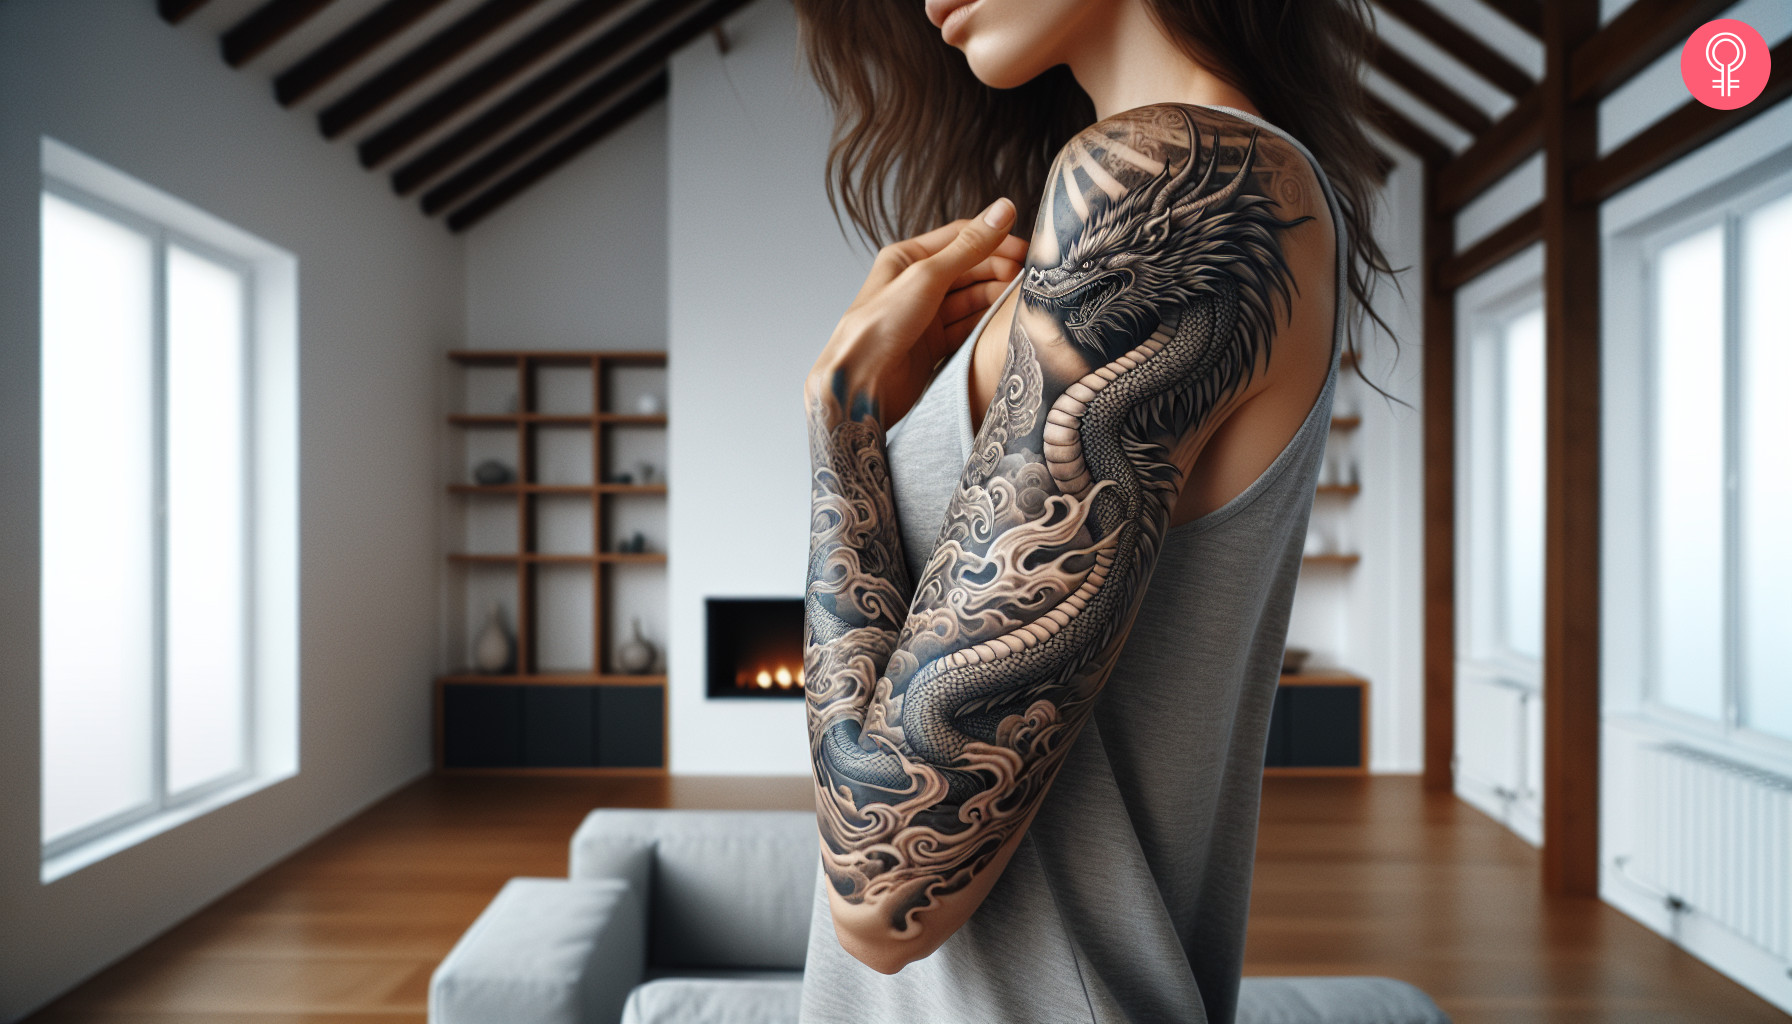 A dragon fantasy tattoo